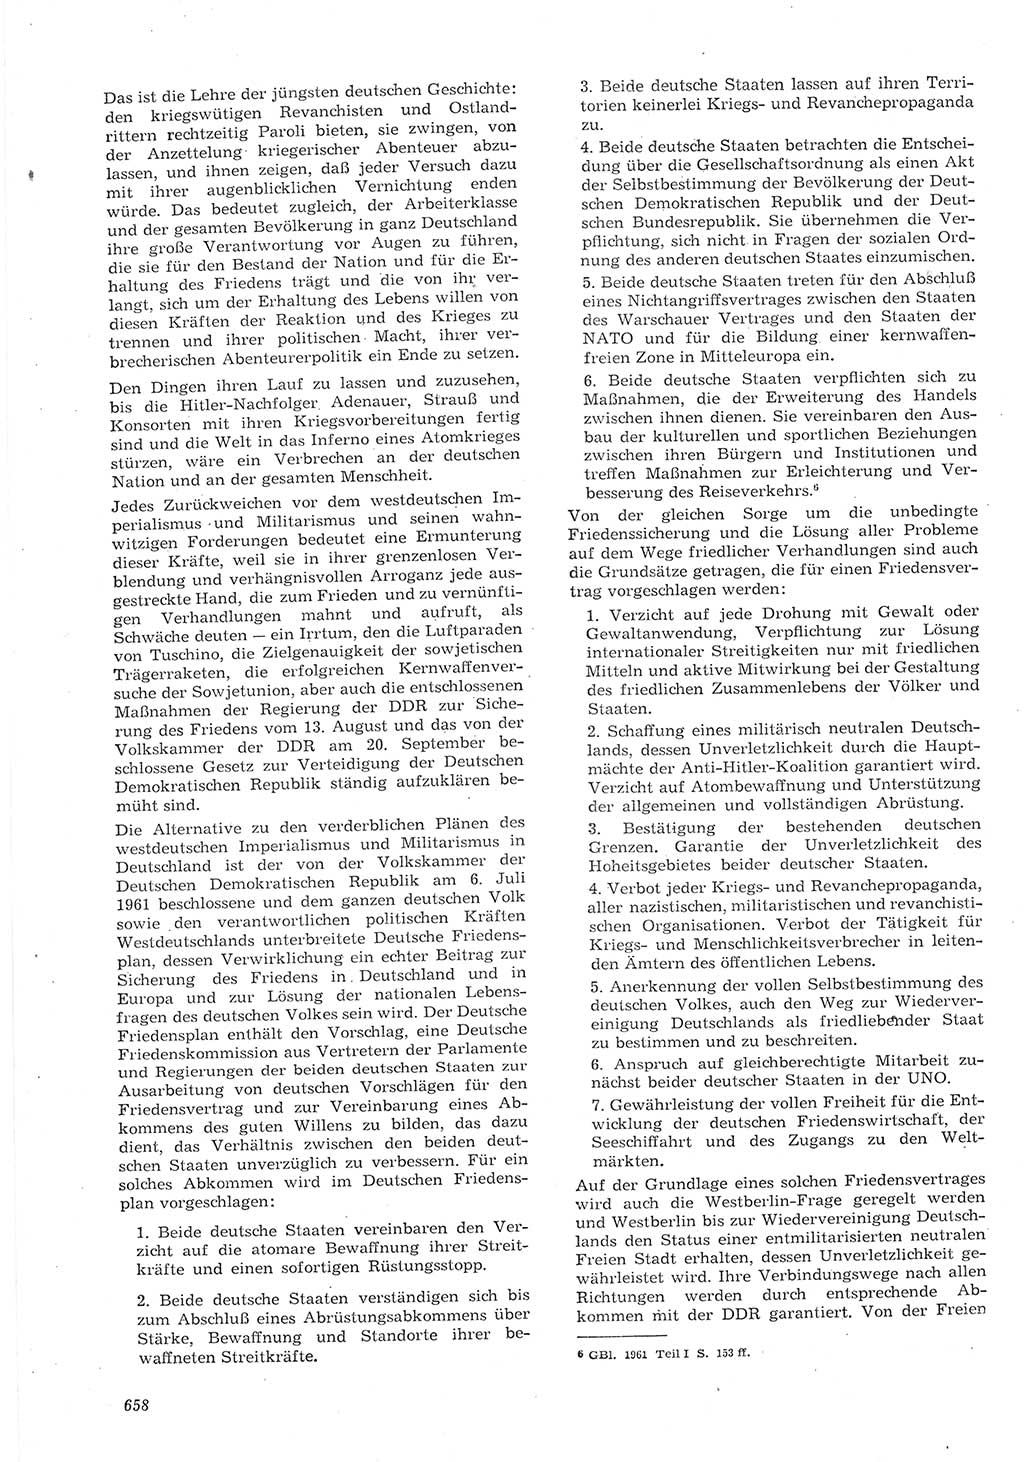 Neue Justiz (NJ), Zeitschrift für Recht und Rechtswissenschaft [Deutsche Demokratische Republik (DDR)], 15. Jahrgang 1961, Seite 658 (NJ DDR 1961, S. 658)